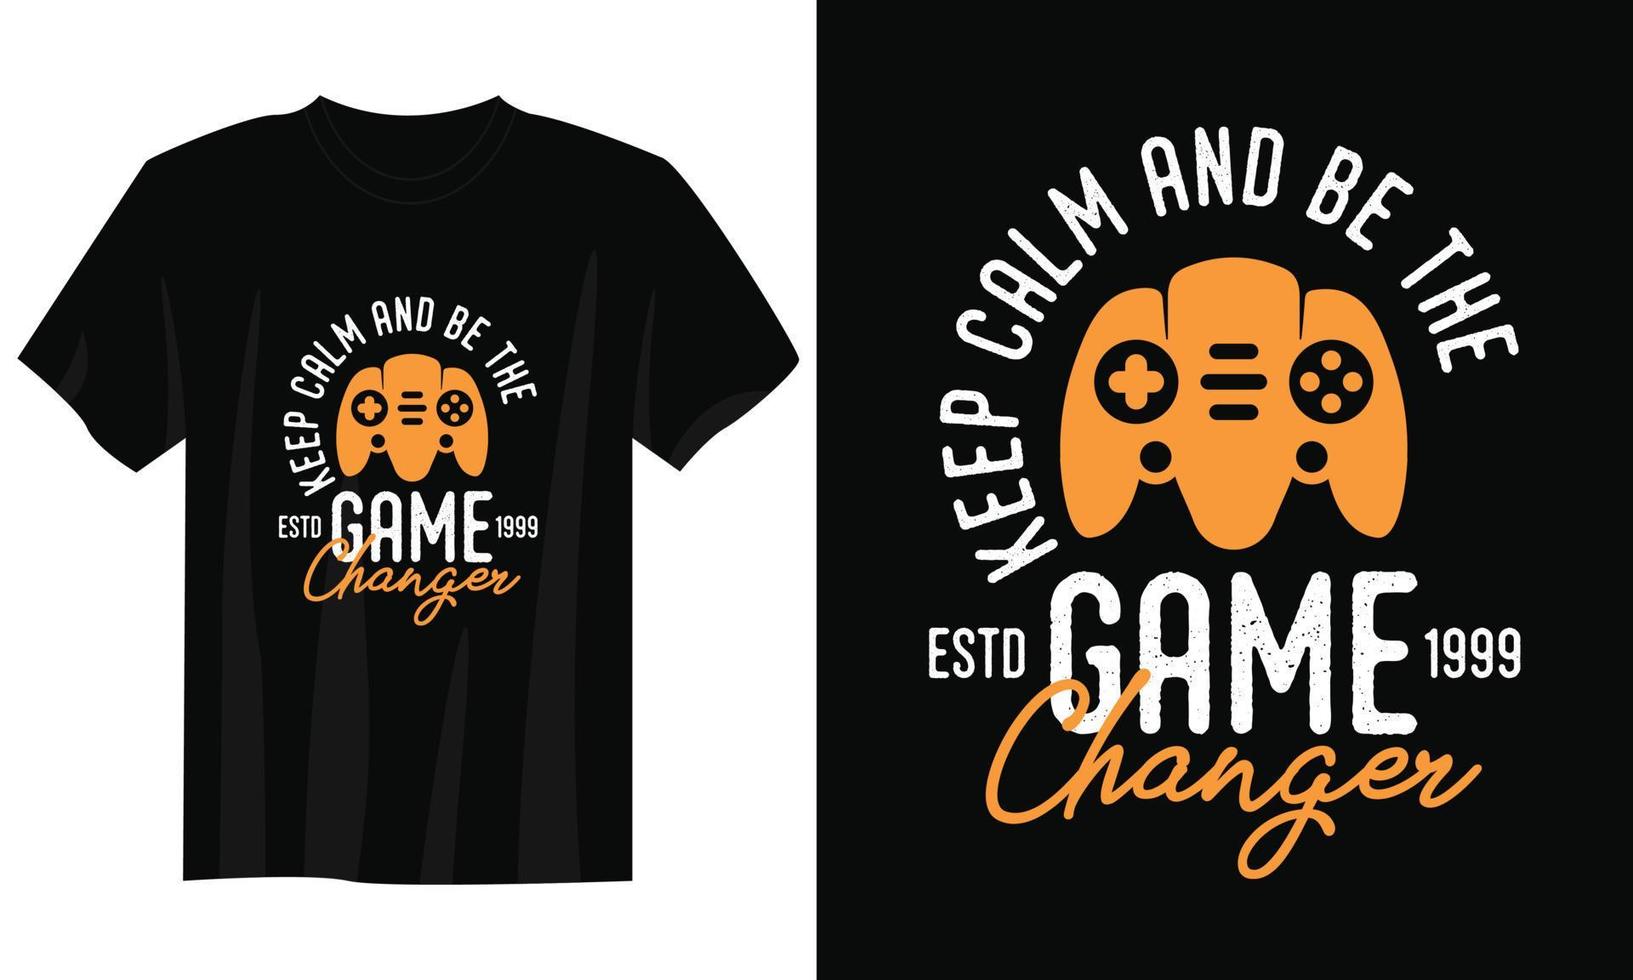 Bleib ruhig und sei der Game Changer Gaming-T-Shirt-Design, Gaming-Gamer-T-Shirt-Design, Vintage-Gaming-T-Shirt-Design, Typografie-Gaming-T-Shirt-Design, Retro-Gaming-Gamer-T-Shirt-Design vektor